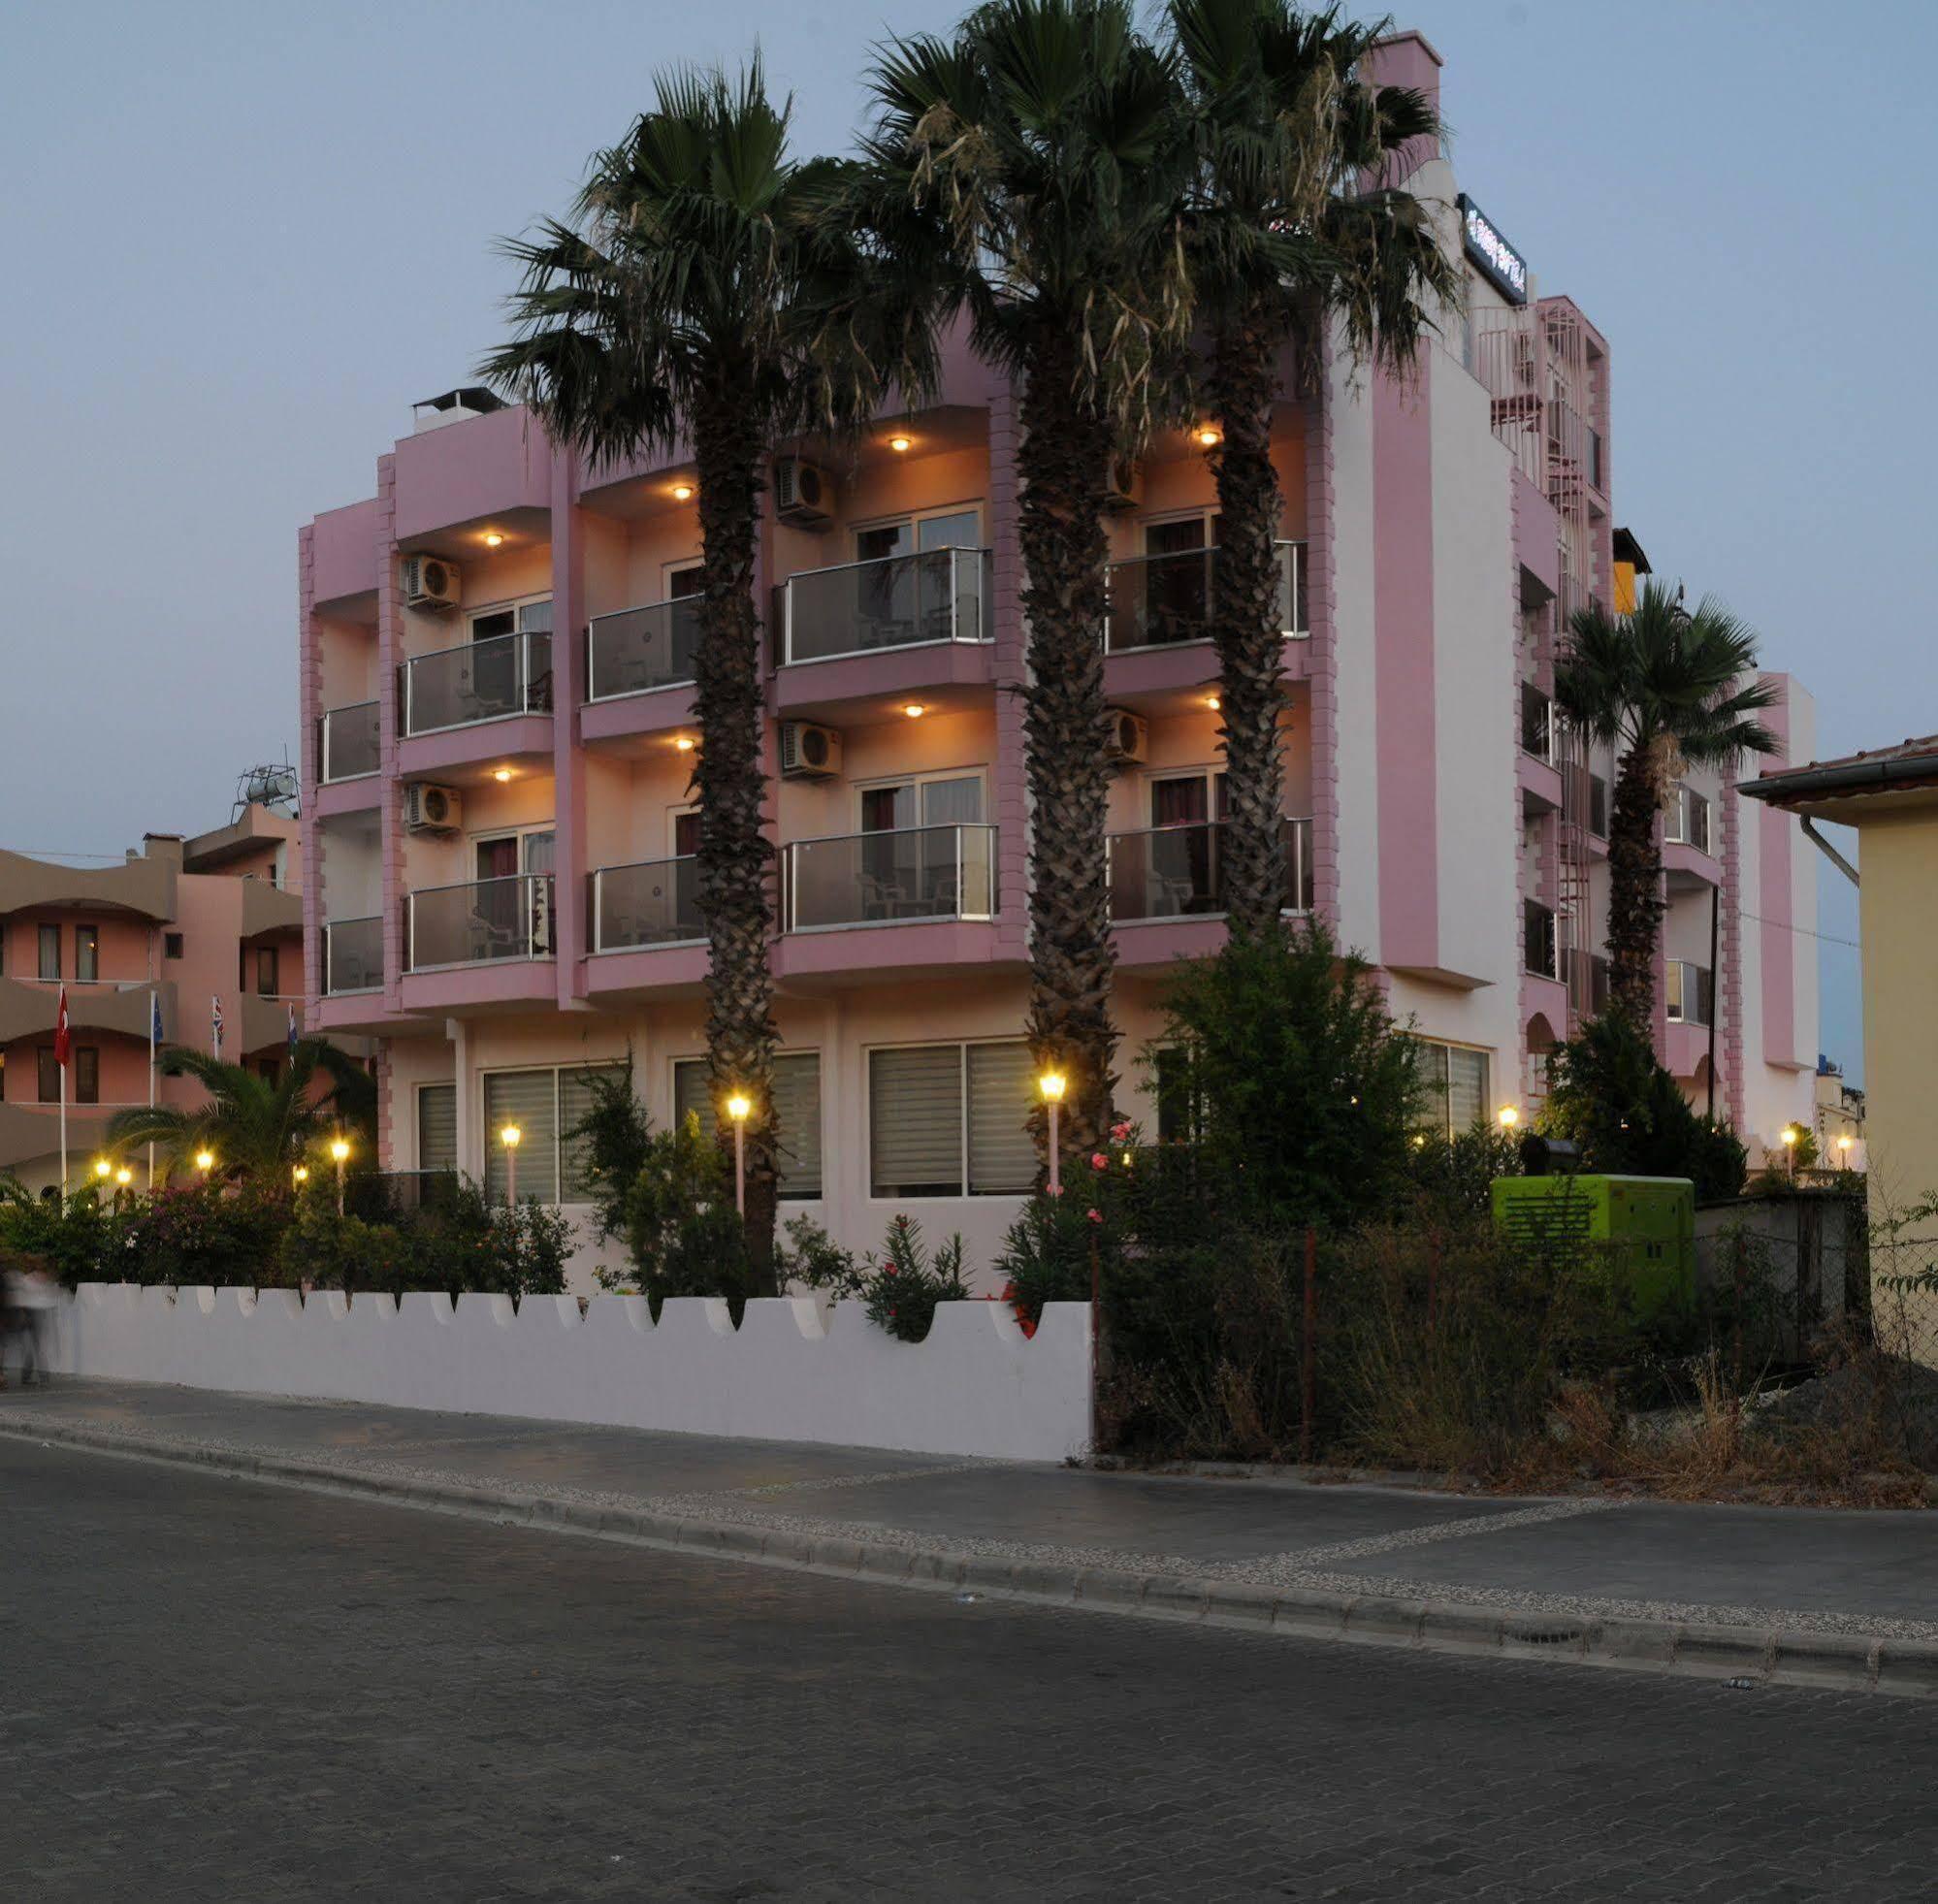 Rosy Hotel Marmaris